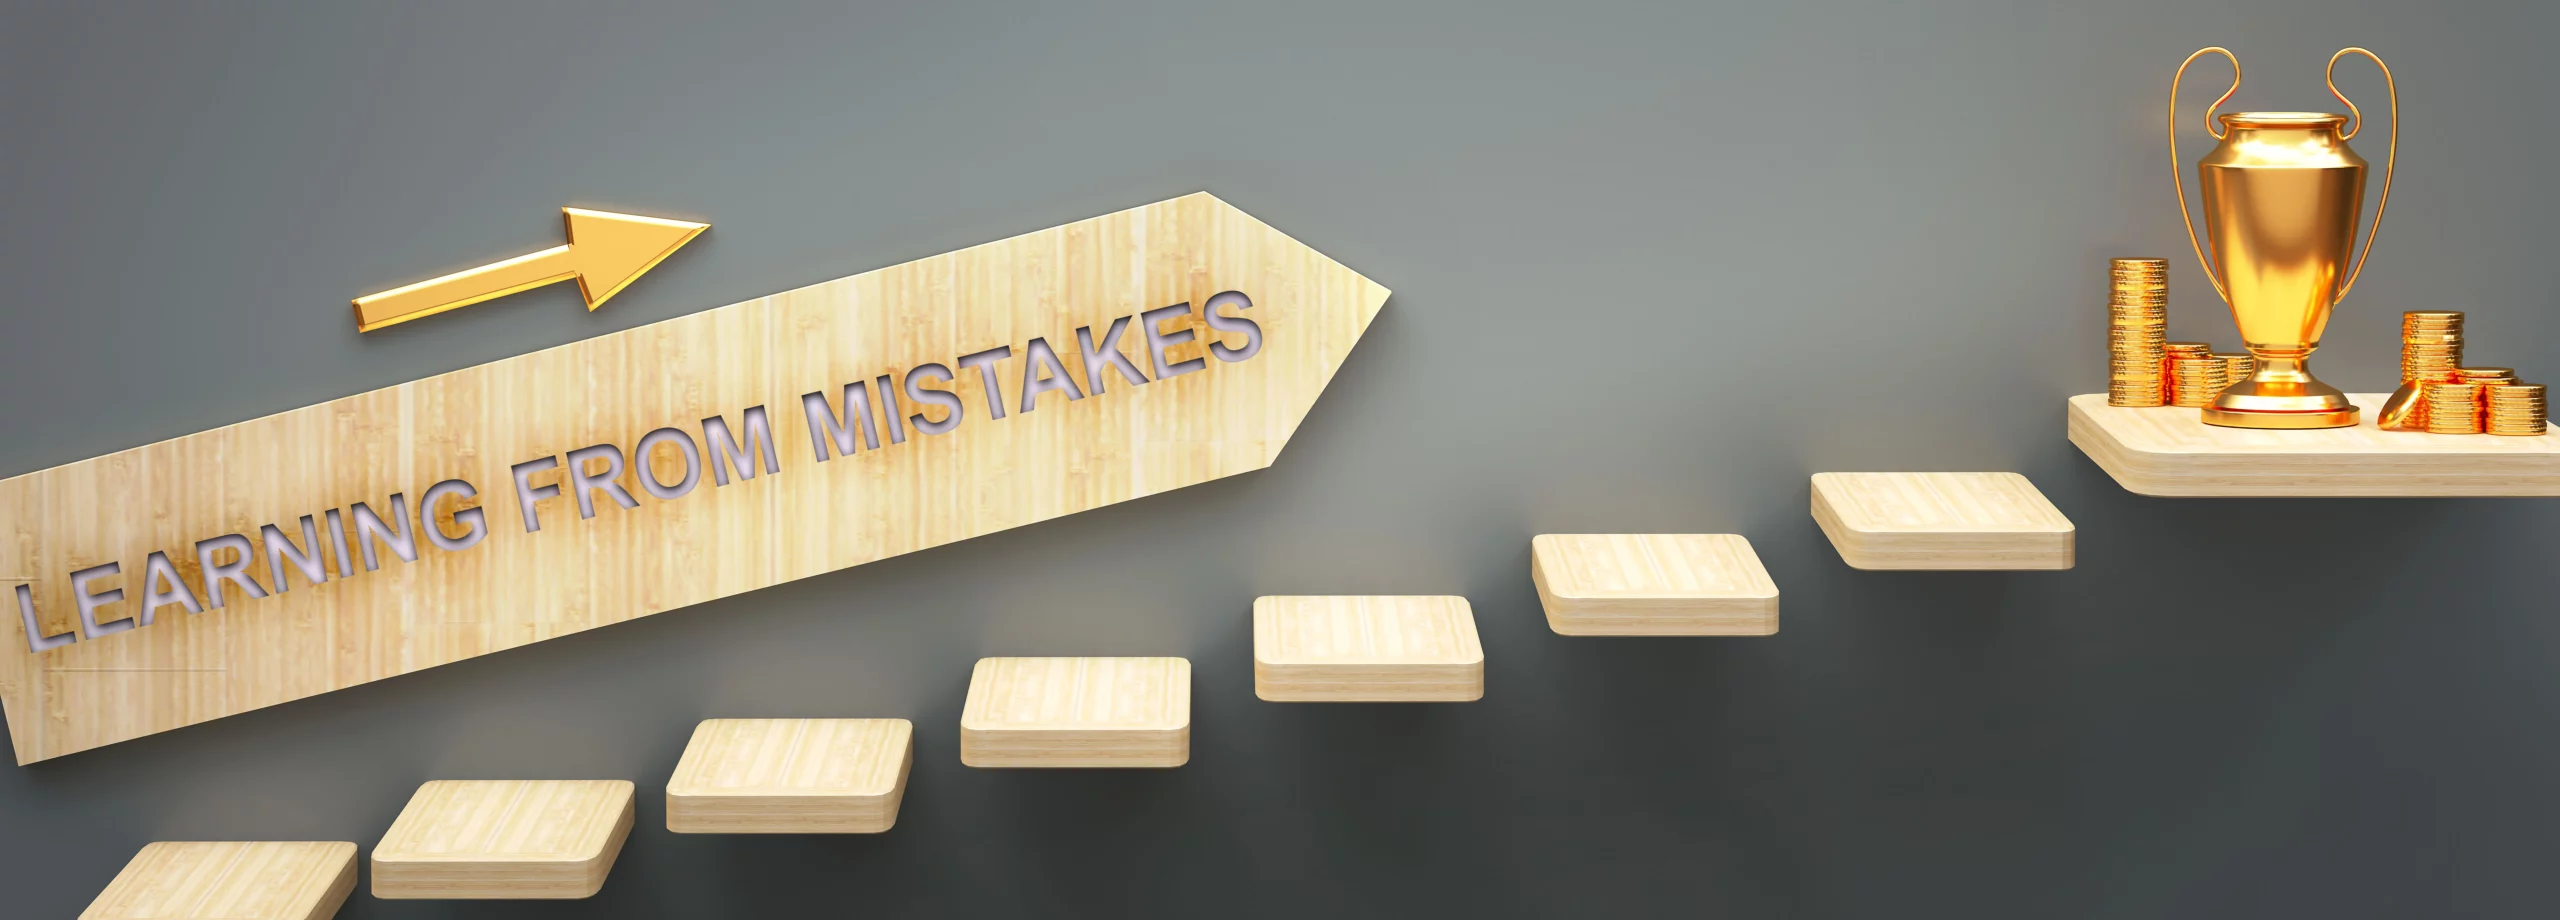 Bild mit Pfeil learning from mistakes um zum Erfolg zu kommen